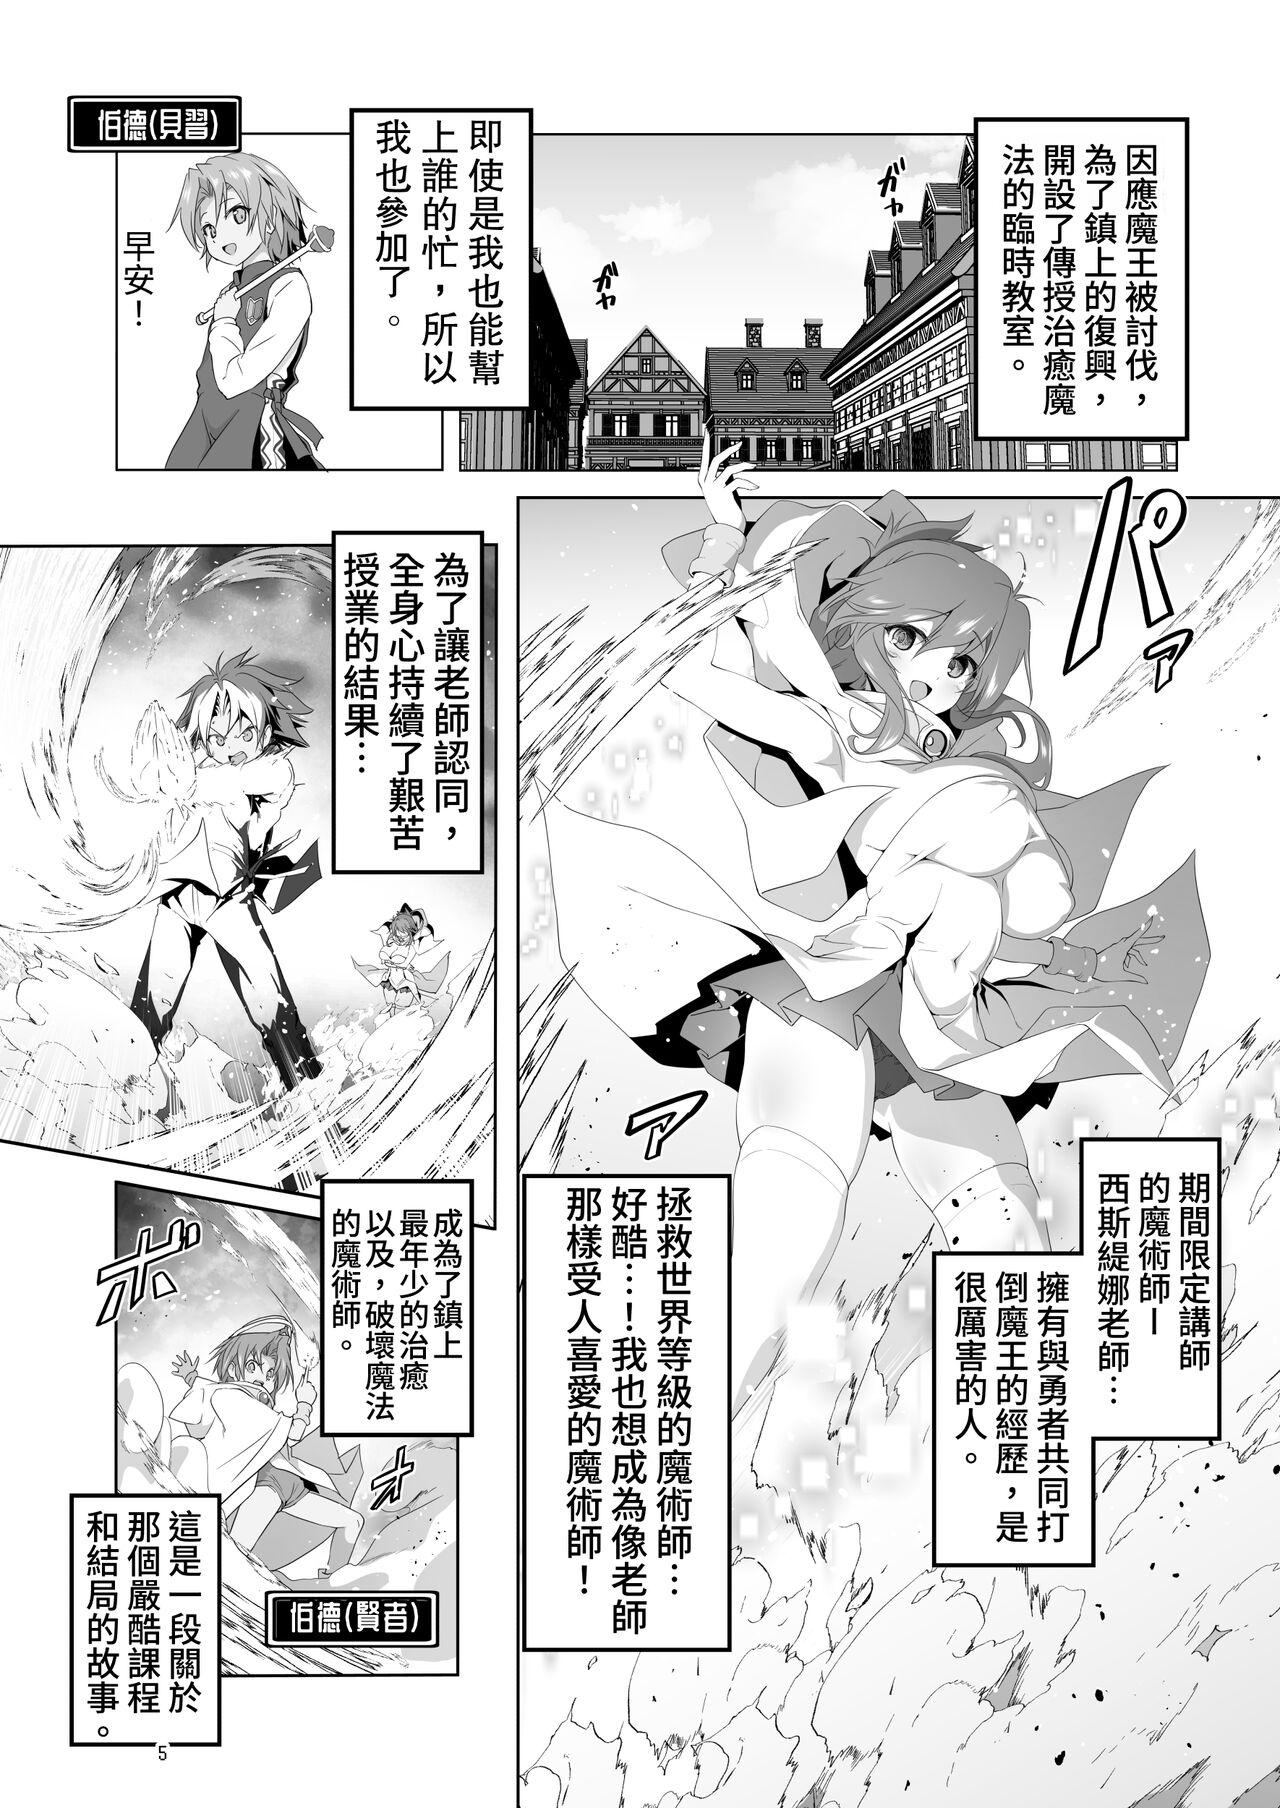 Gangbang Makotoni Zannen desu ga Bouken no Sho 9 wa Kiete Shimaimashita. - Original Sfm - Page 5